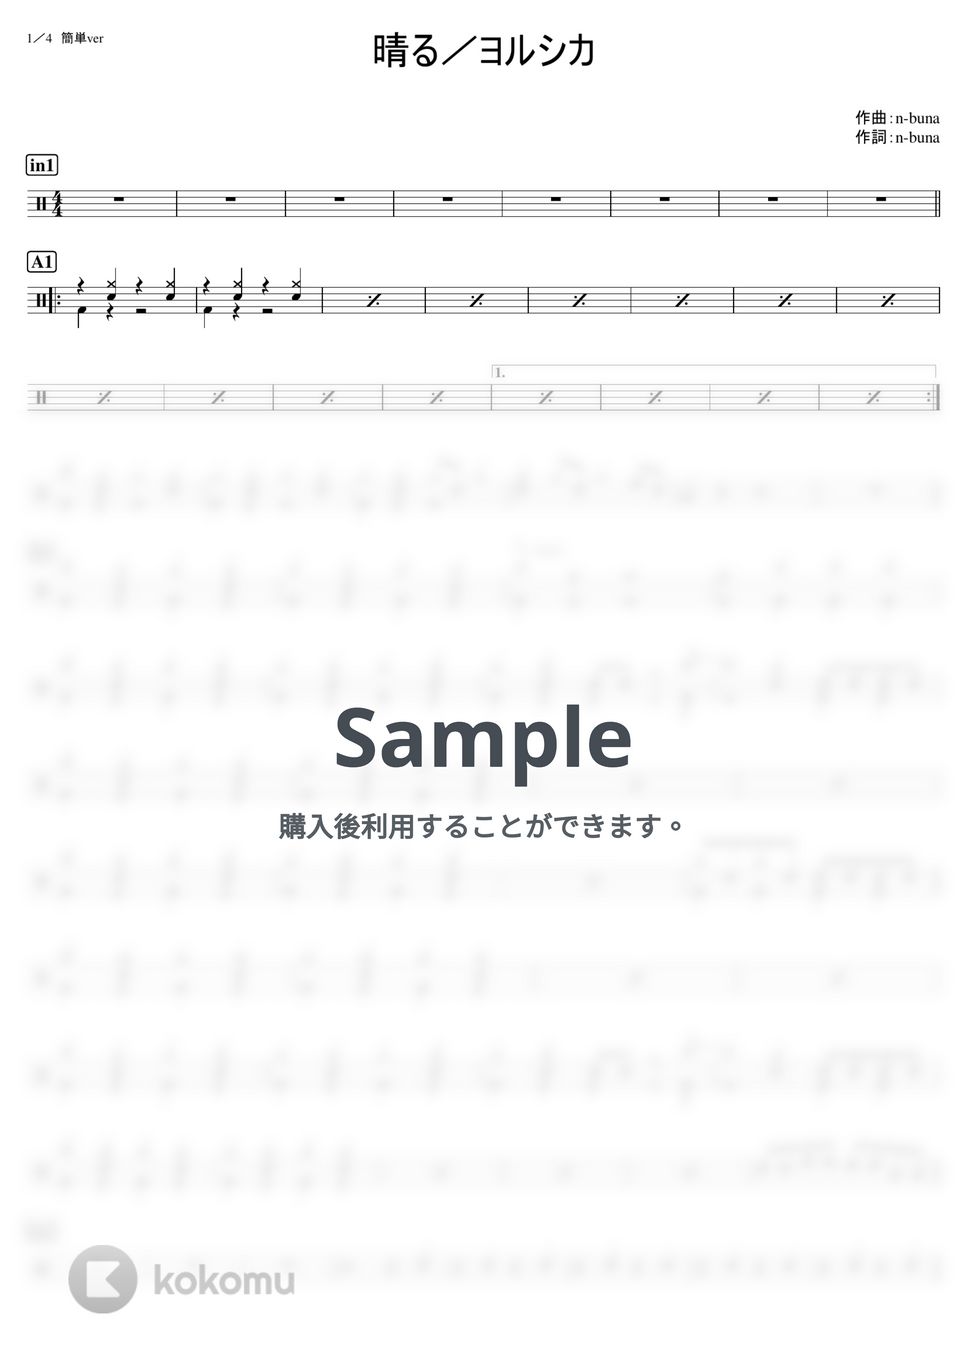 ヨルシカ - 晴る (難易度別セット) by kamishinjo-drum-school